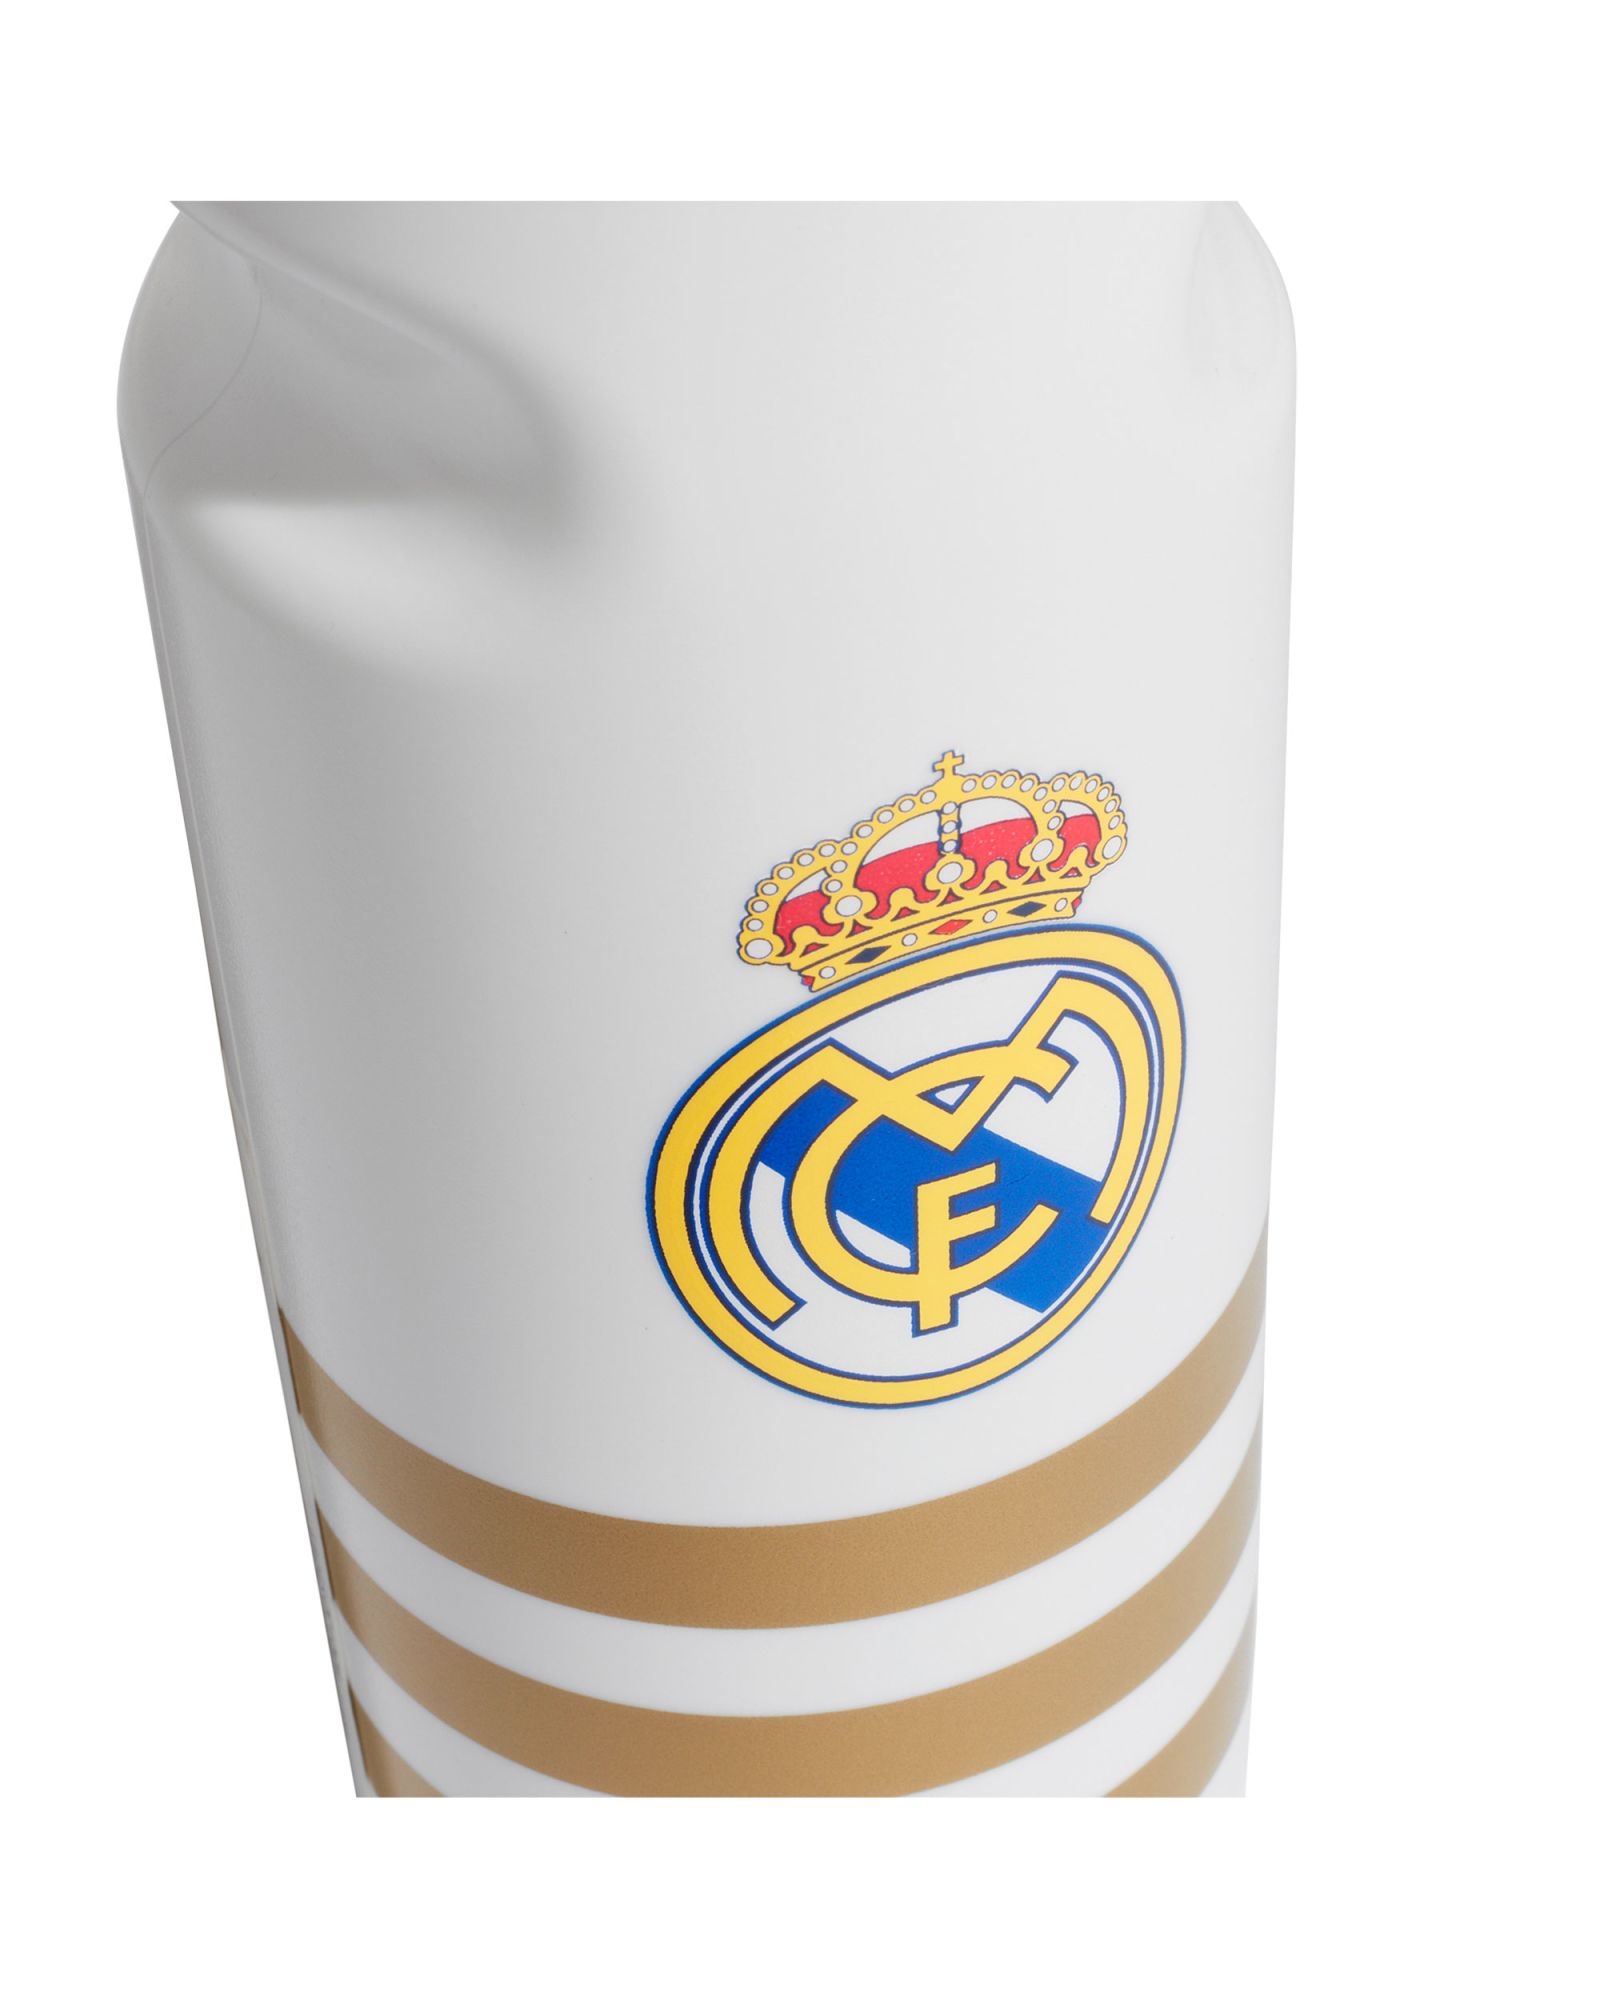 Botella del Real Madrid * Regalos de equipos de futbol futbollife